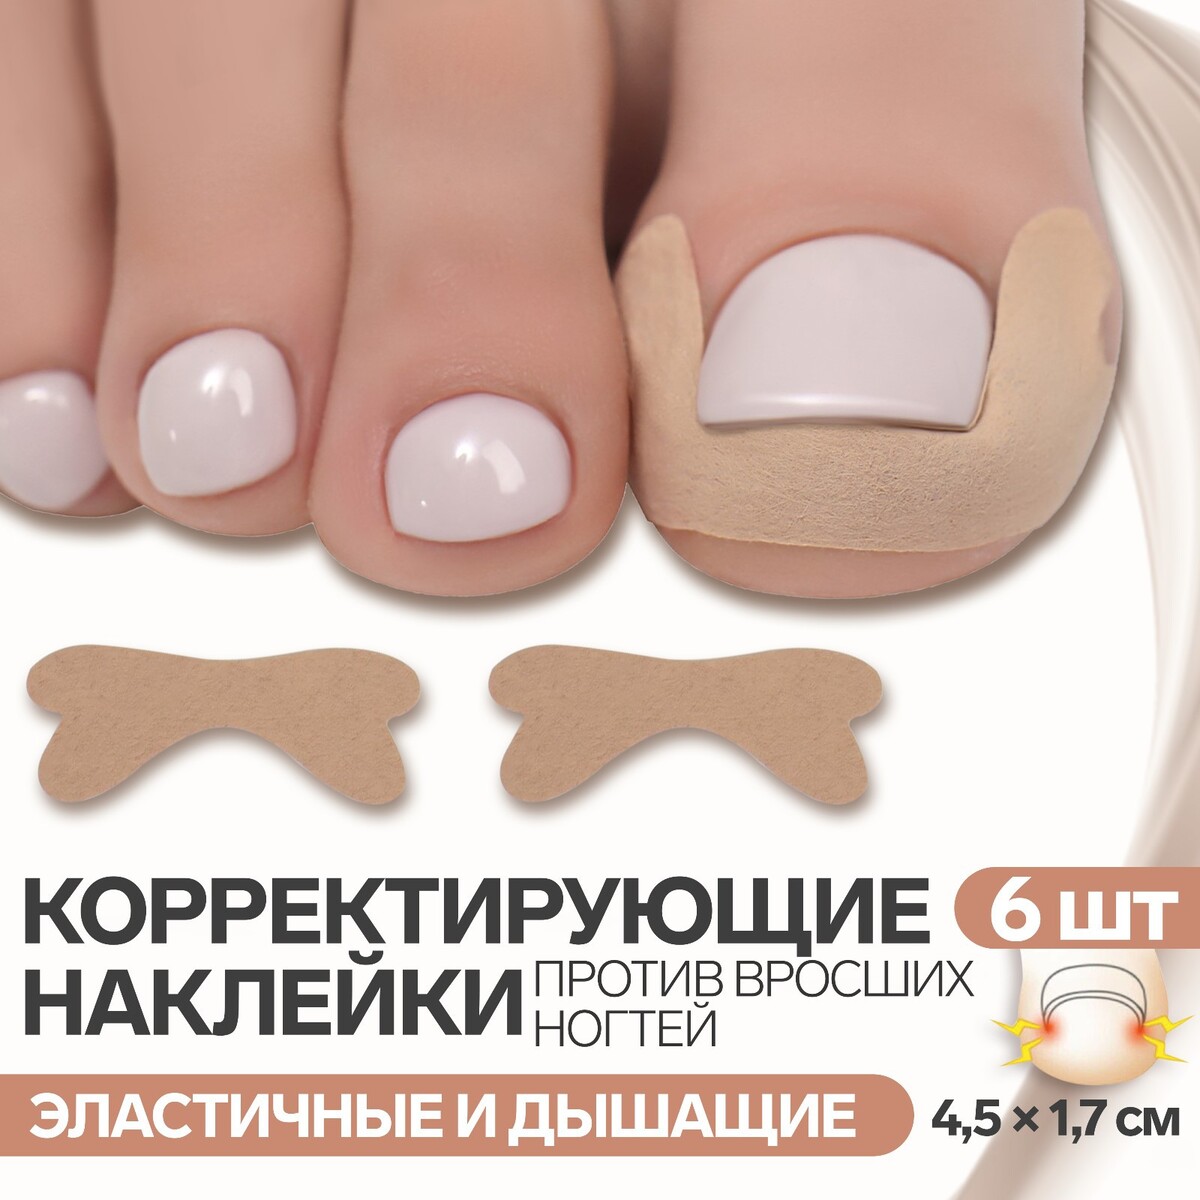 Наклейки против вросших ногтей, 6 шт, 4,5 × 1,7 см, цвет бежевый спот корректор против воспалений 15 г